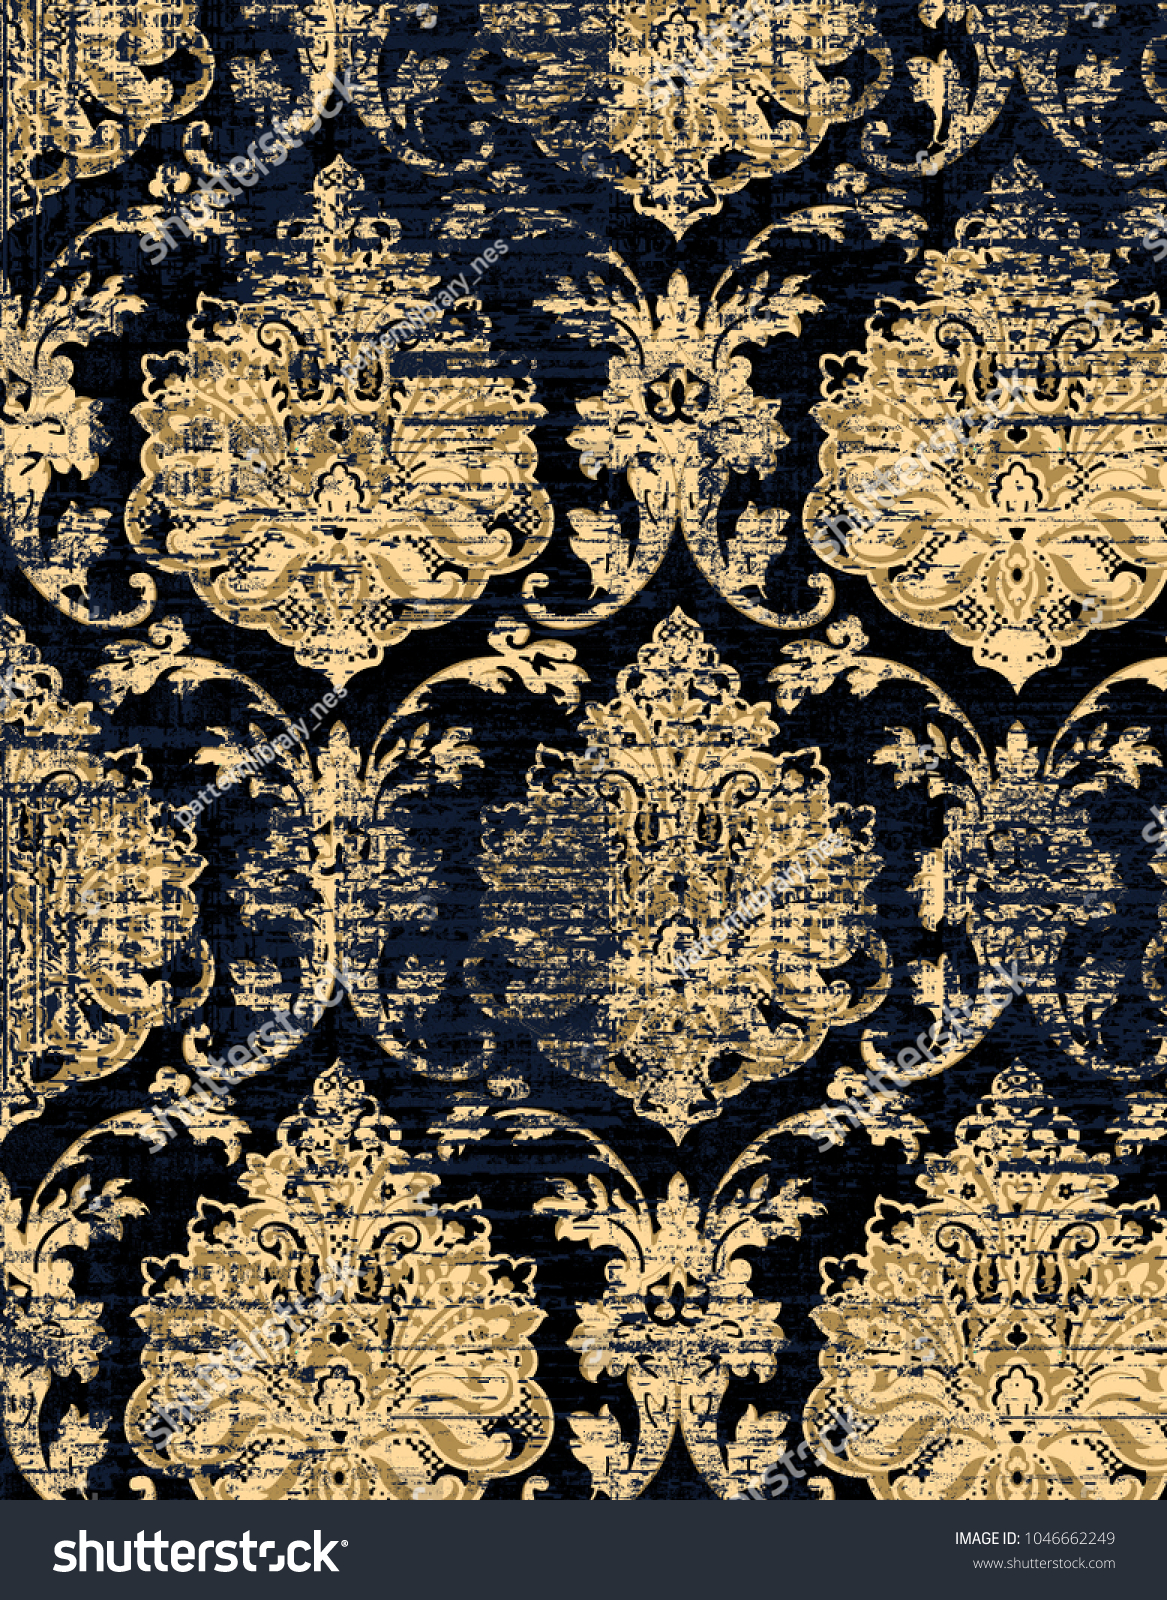 Best 48 Ottoman Wallpaper On Hipwallpaper Ottoman Empire Wallpaper Ottoman Wallpaper And Ottoman Jester Wallpaper